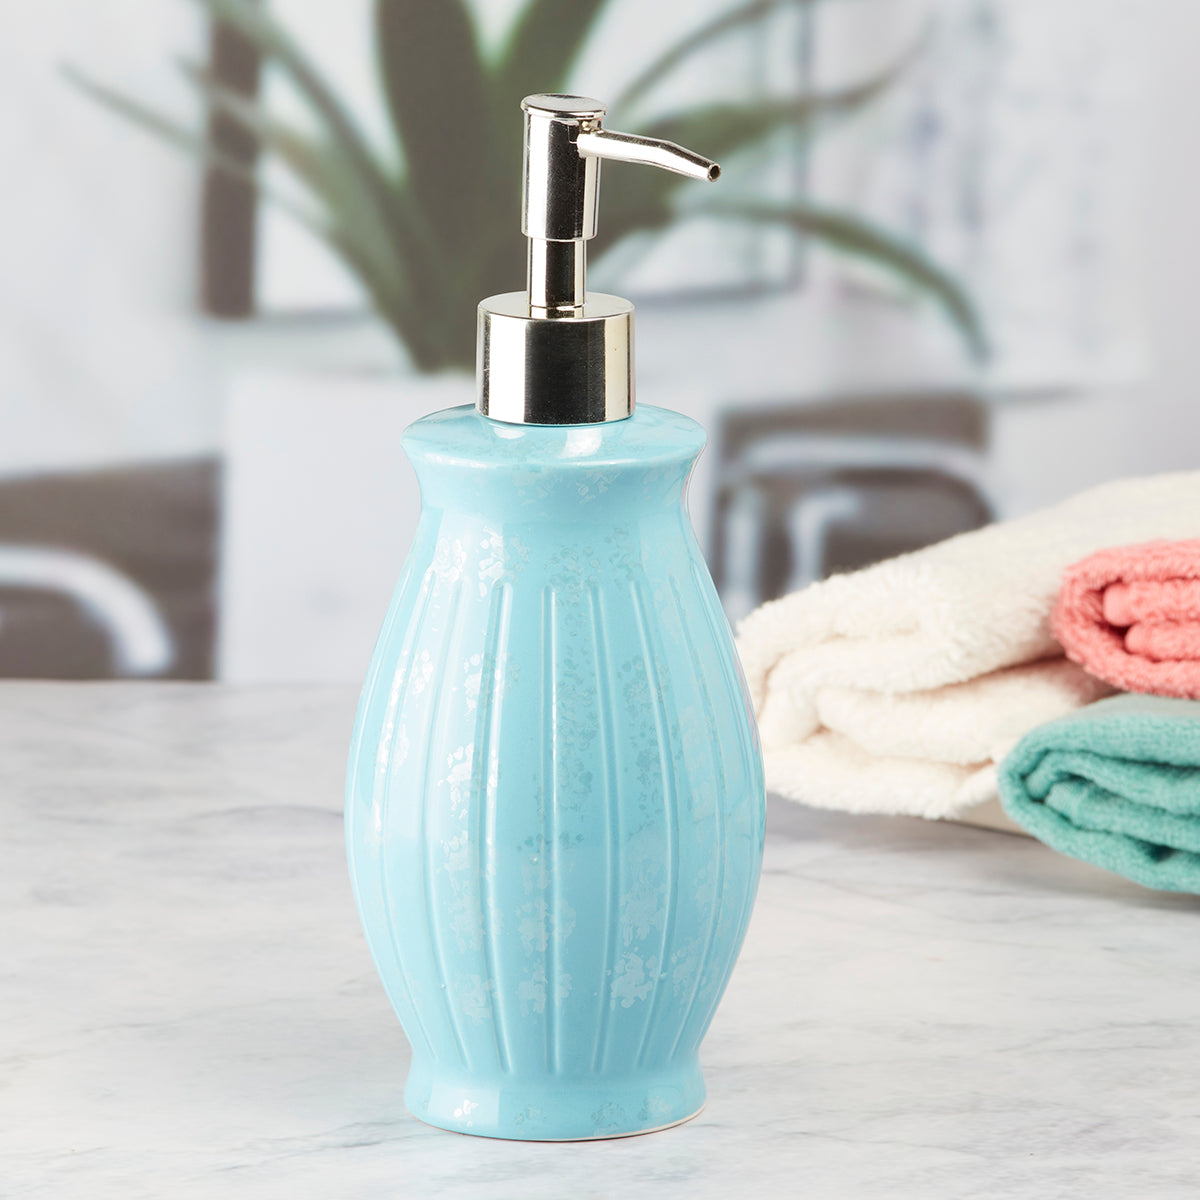 Kookee Ceramic Soap Dispenser for Bathroom handwash, refillable pump bottle for Kitchen hand wash basin, Set of 1, Blue (8005)